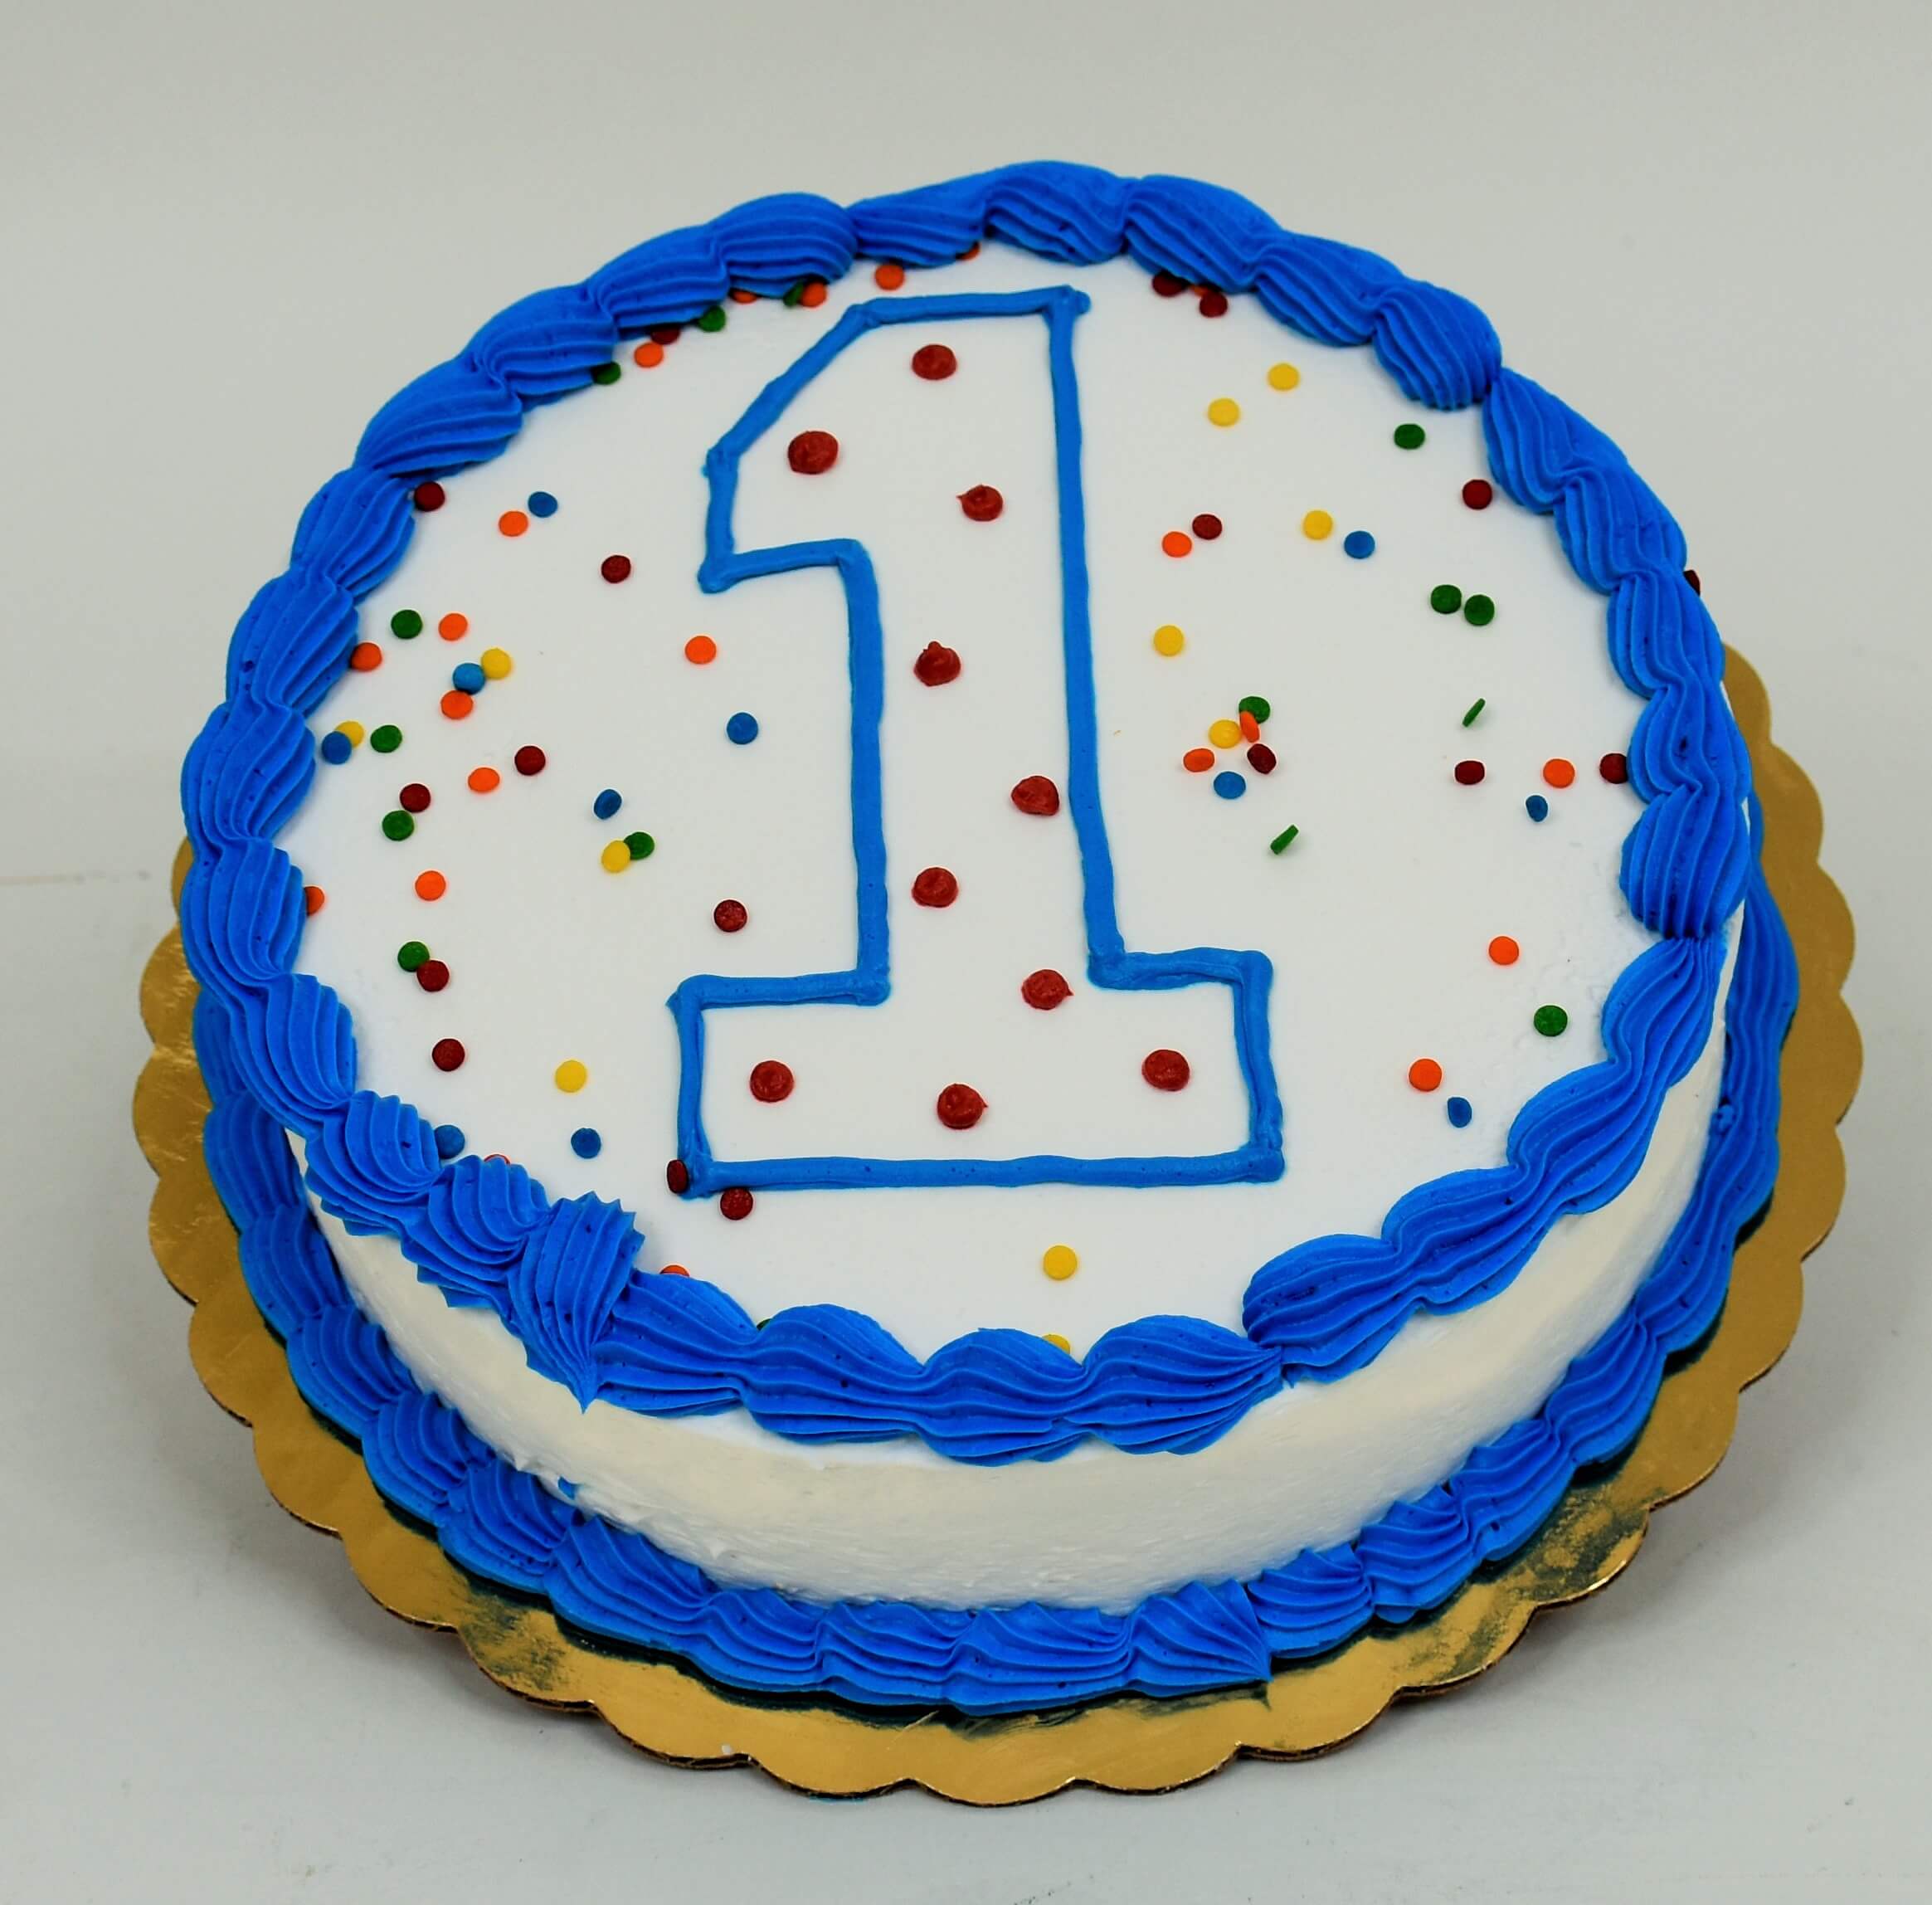 McArthur's Bakery Custom Cake with #1, Rainbow Confetti, Blue